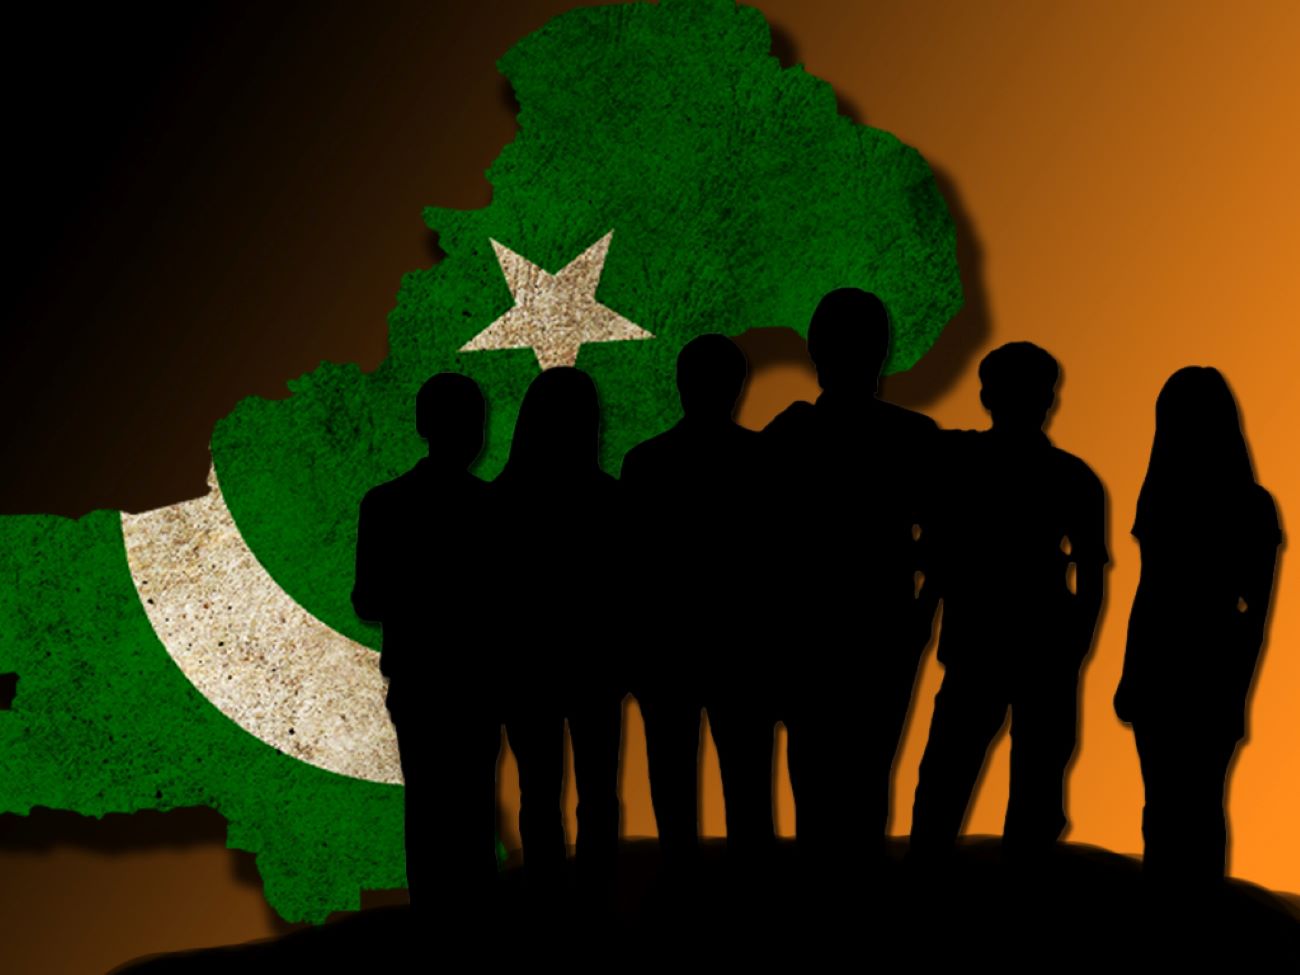 ပါကစ္စတန်တွင် ဘွဲ့ရလူငယ်များ အလုပ်လက်မဲ့နှုန်း မြင့်တက်